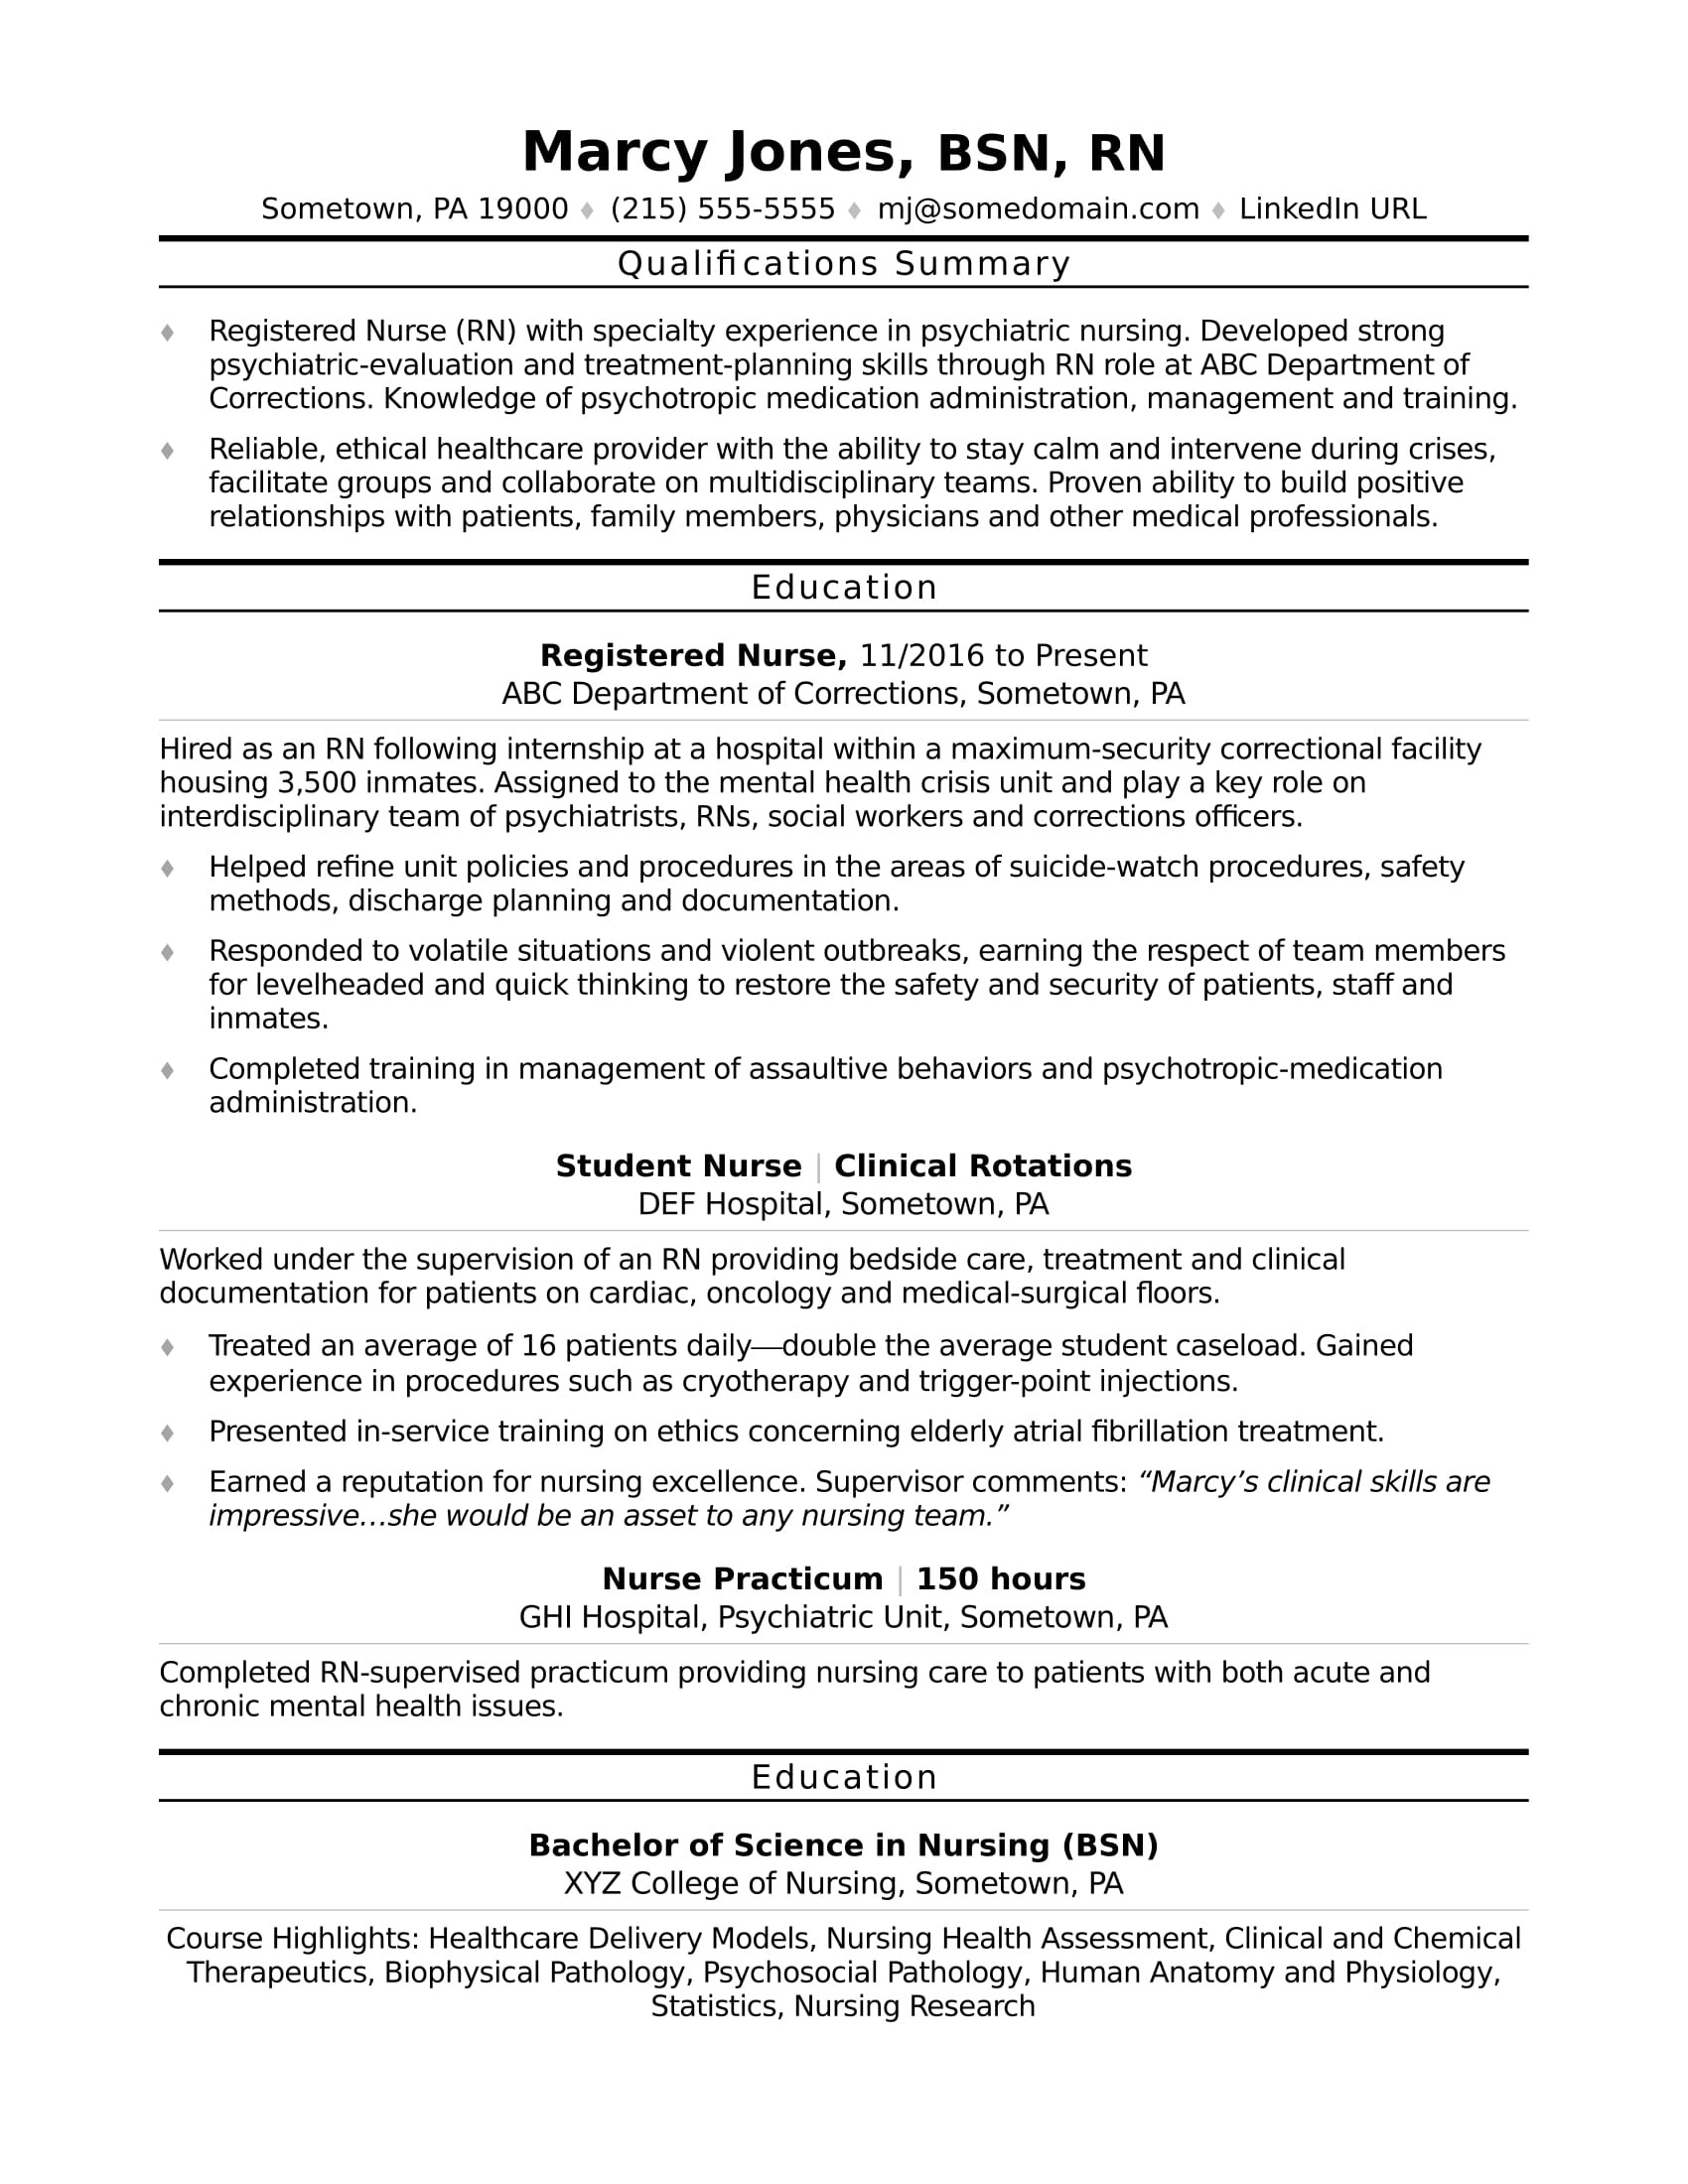 Resume Sample for A New Rn Entry-level Nurse Resume Monster.com